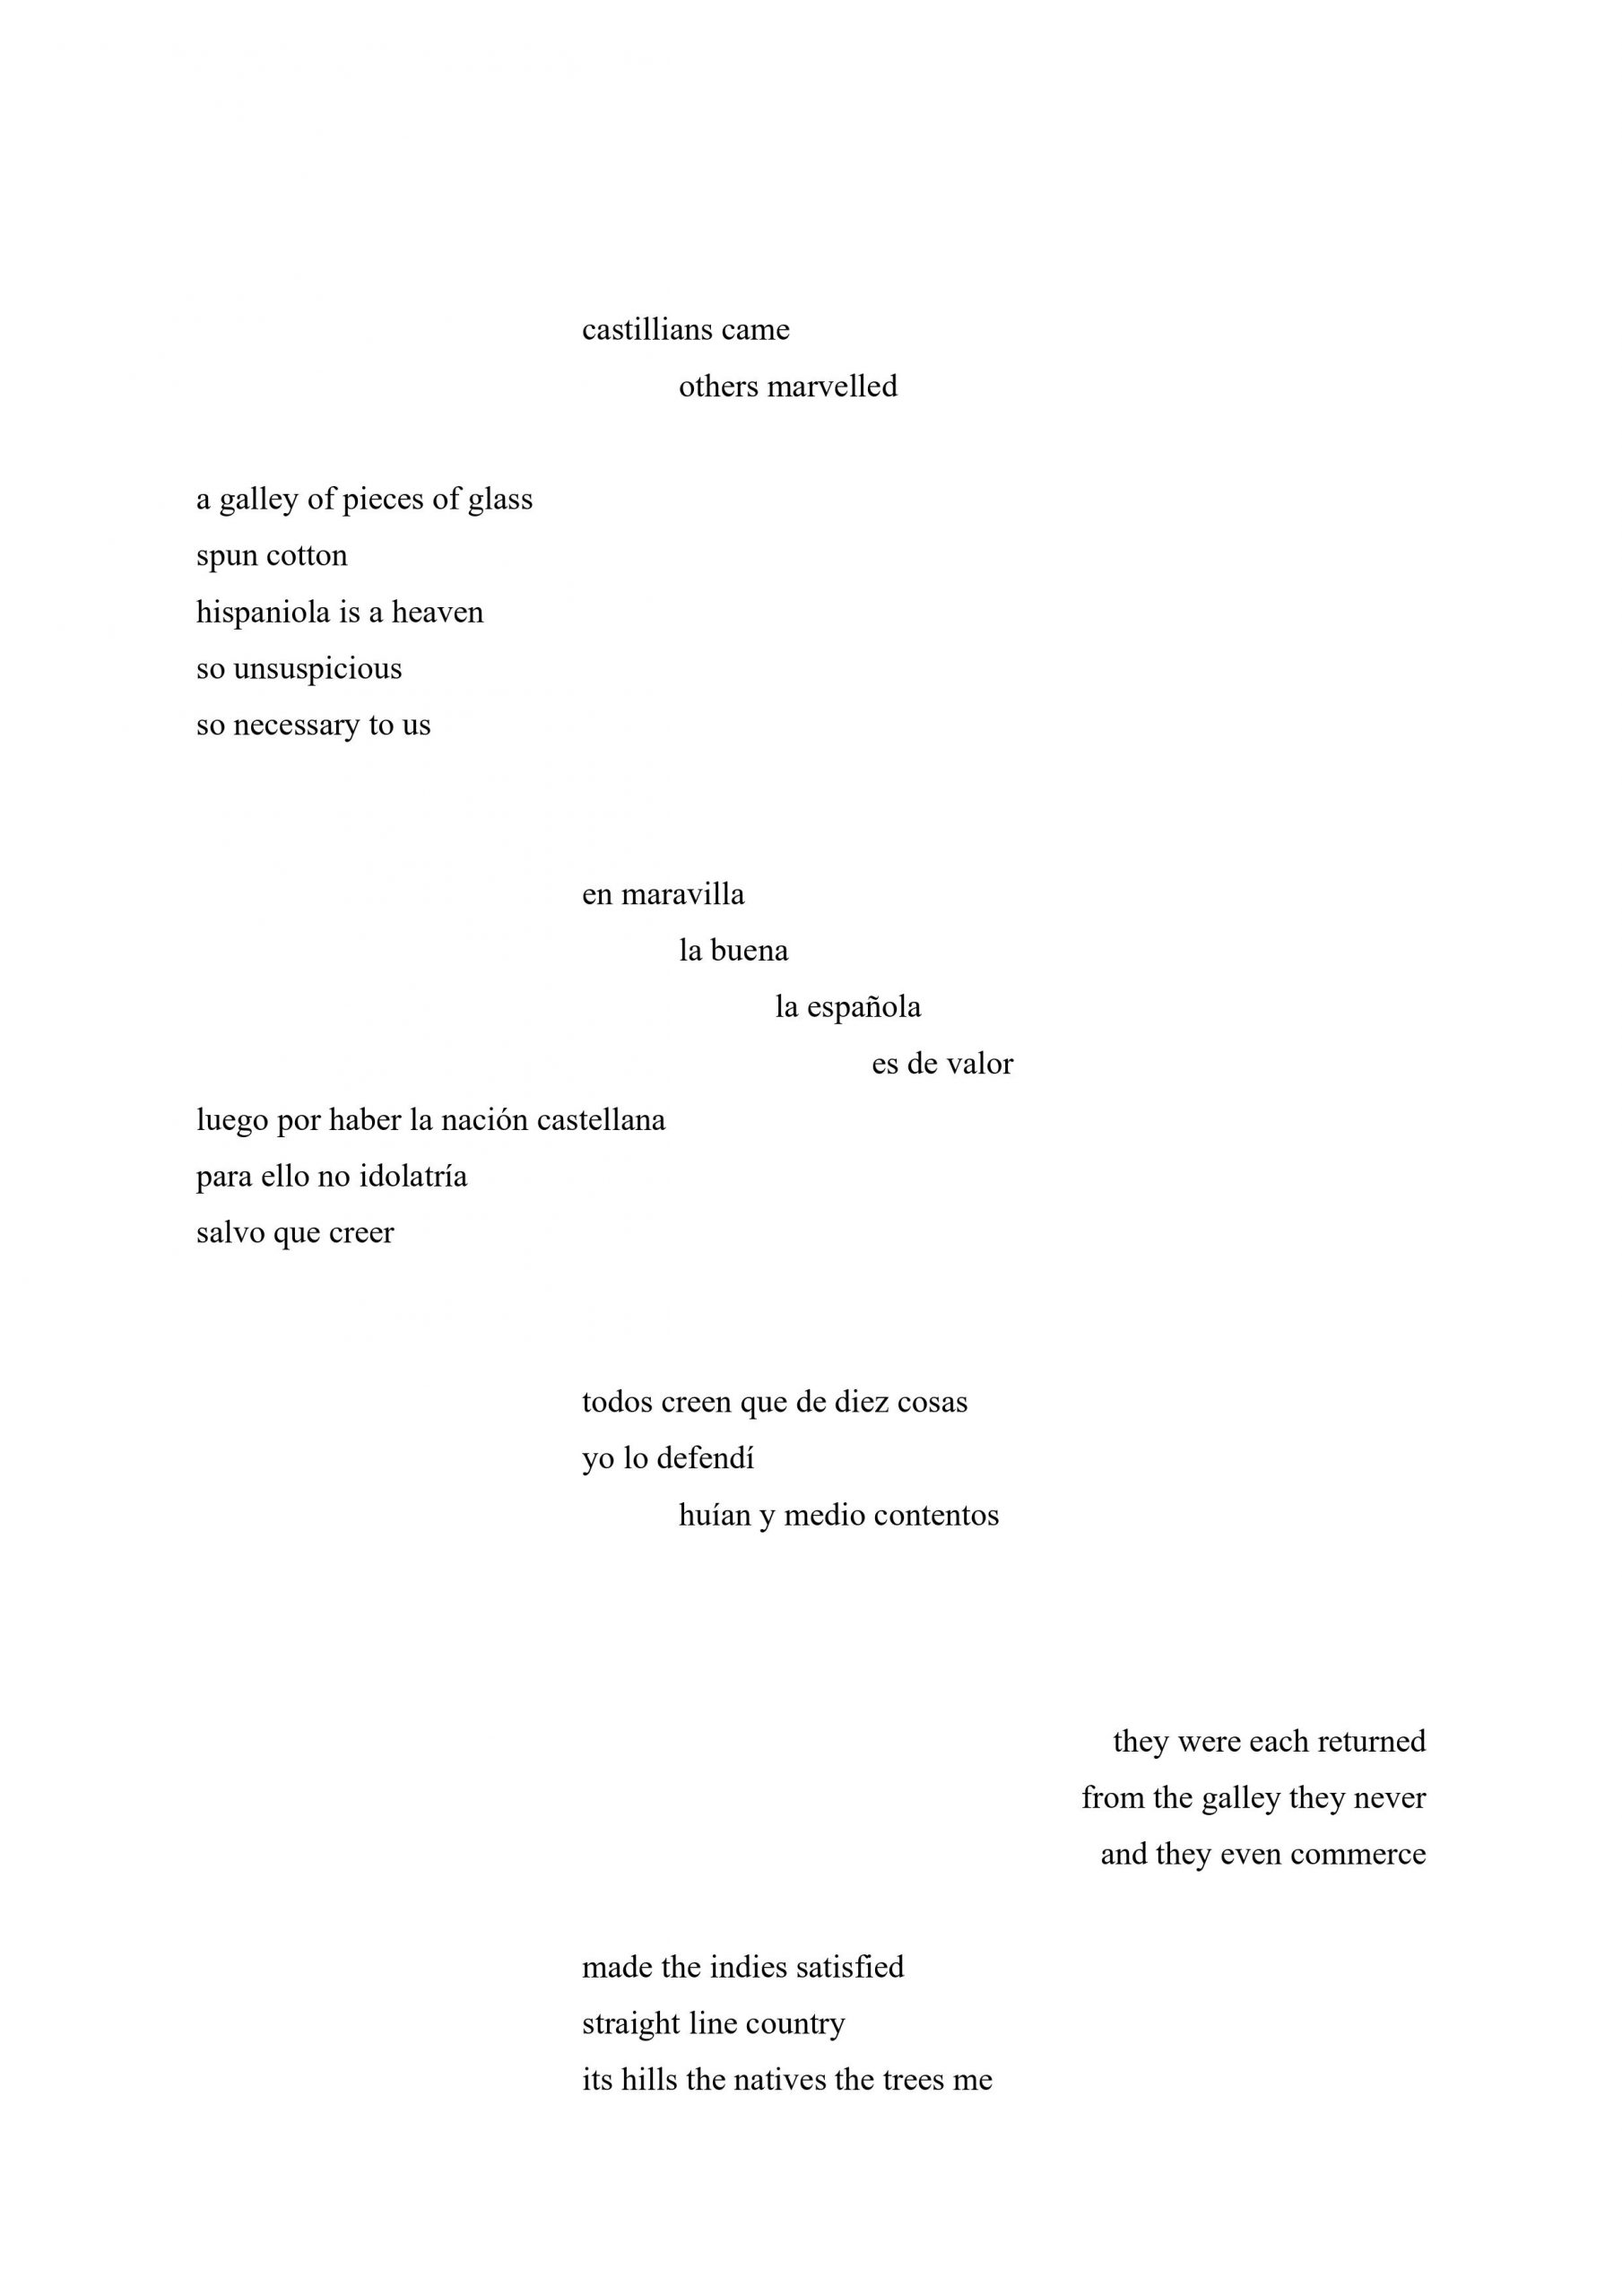 Poem by Jose Gabriel Figueroa Carle